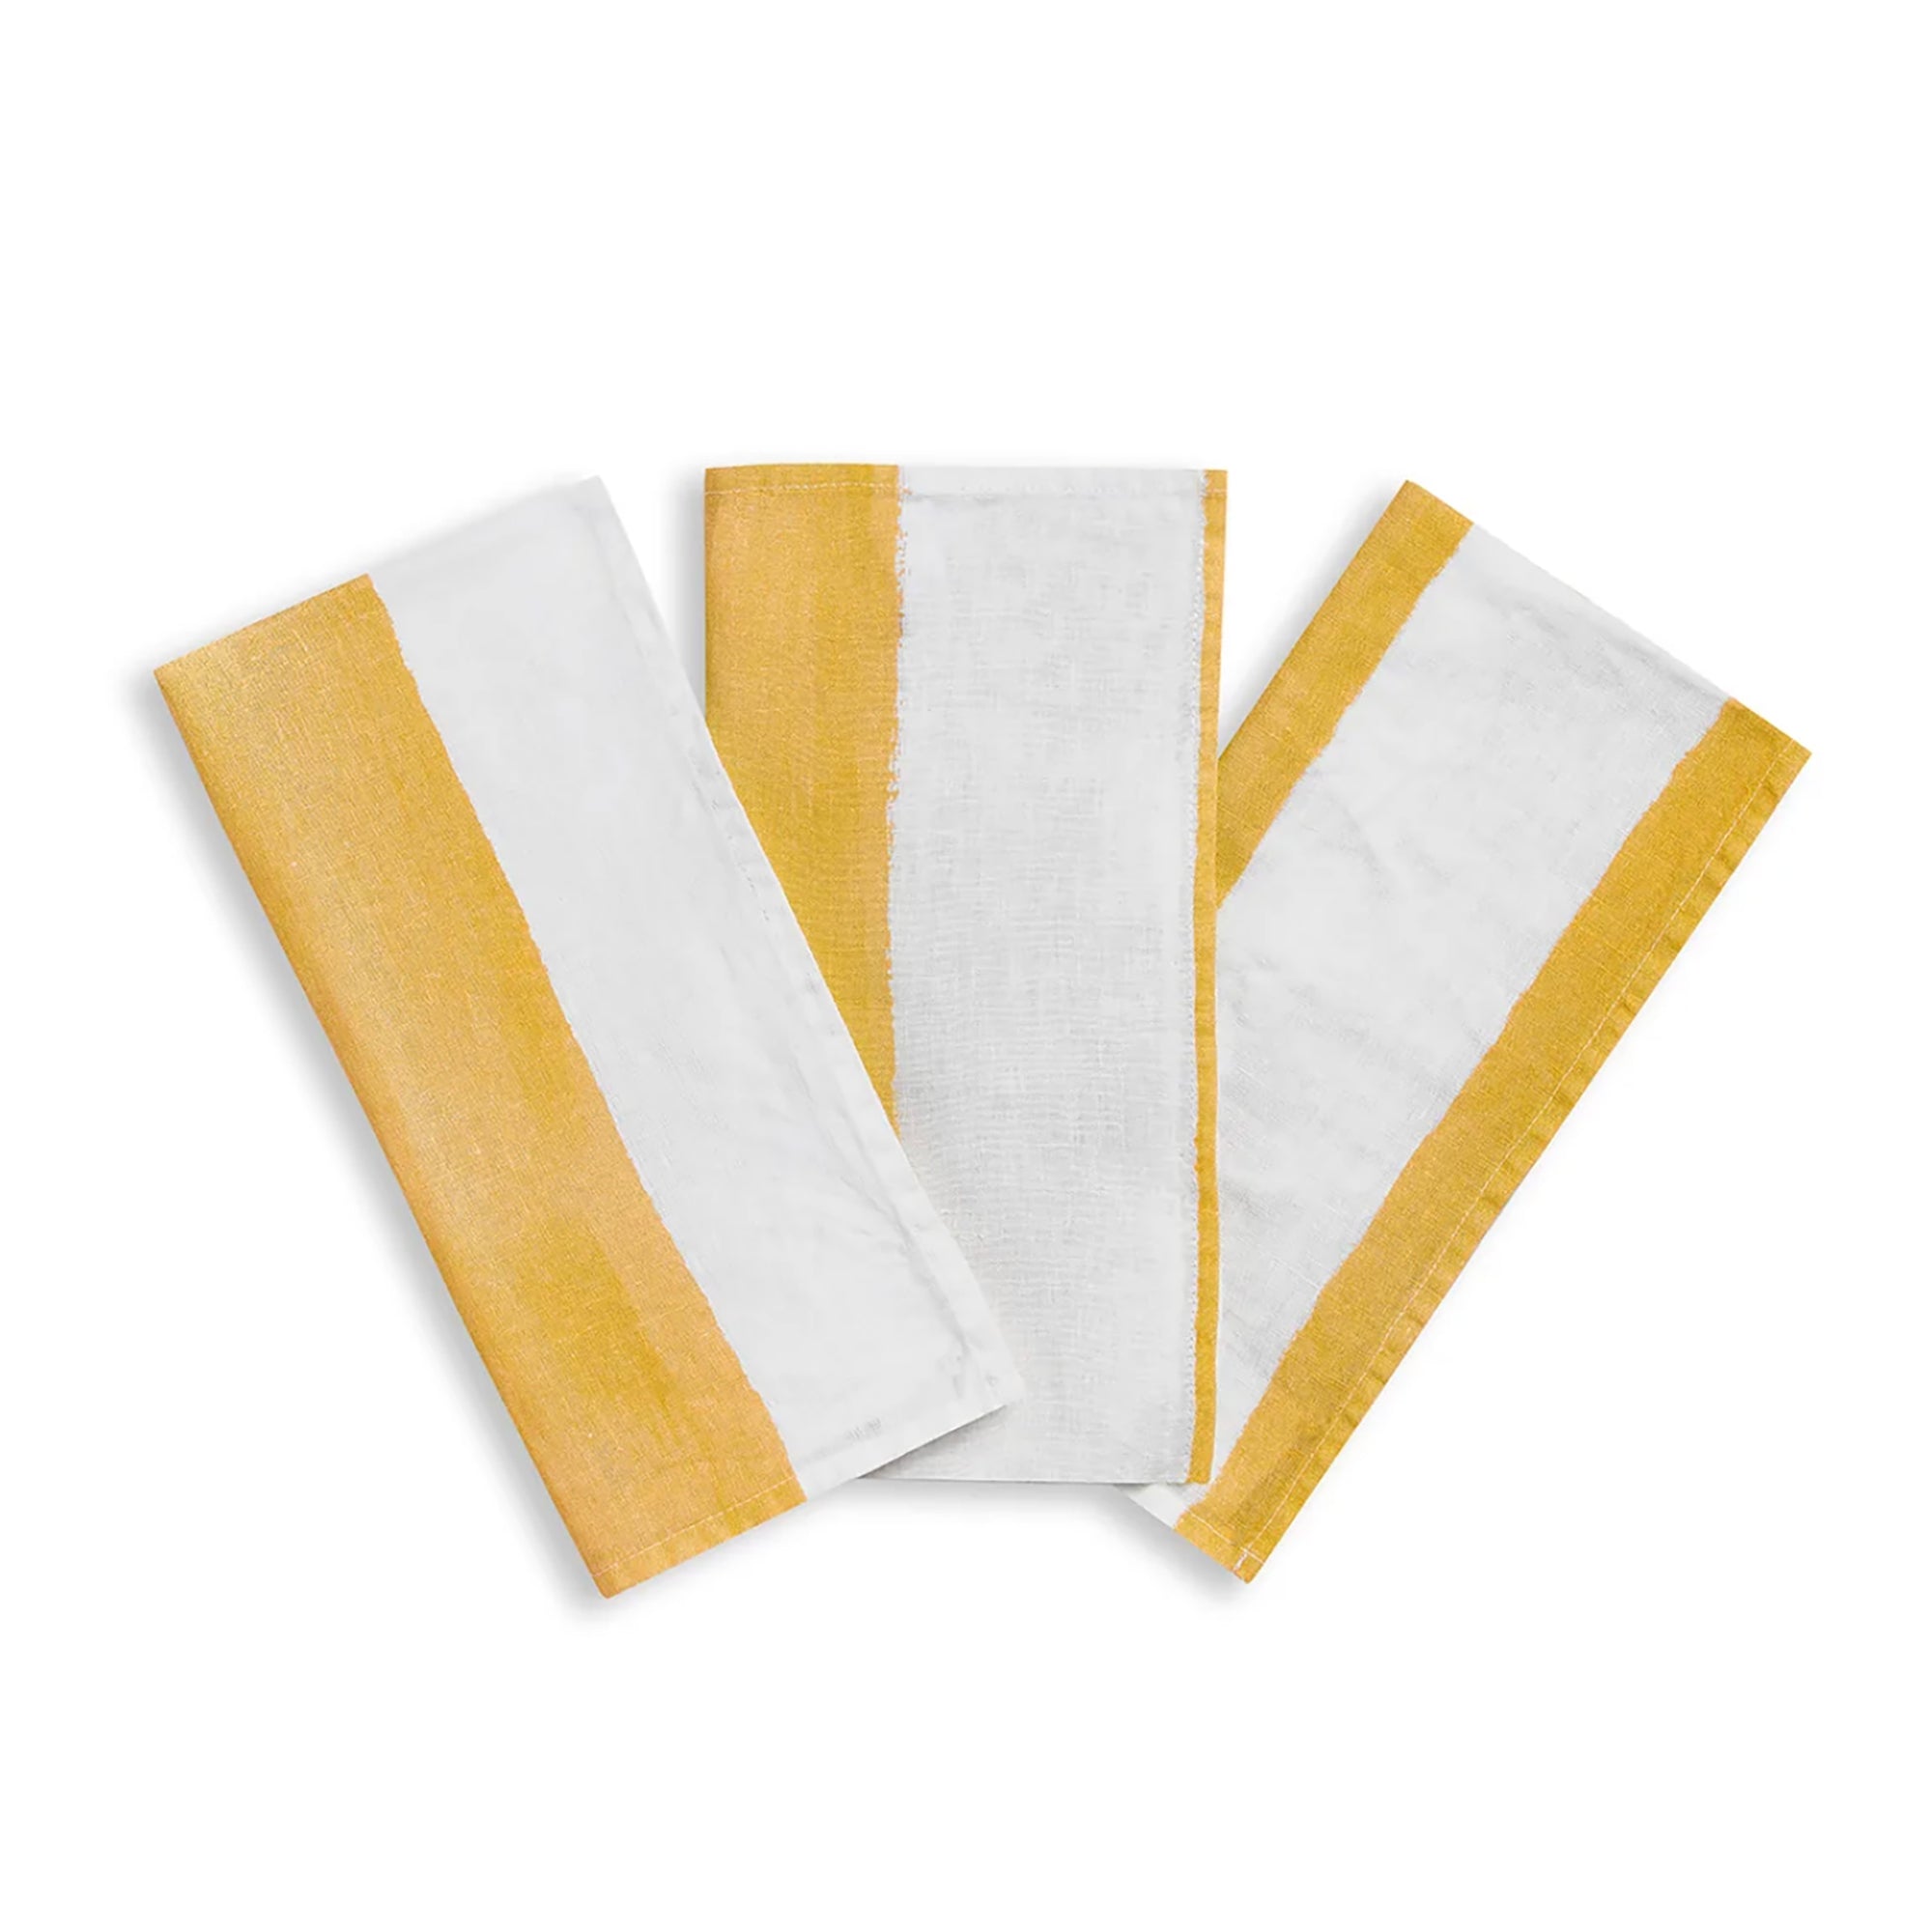 Stripe Linen Napkins - Yellow & White (set of 4)